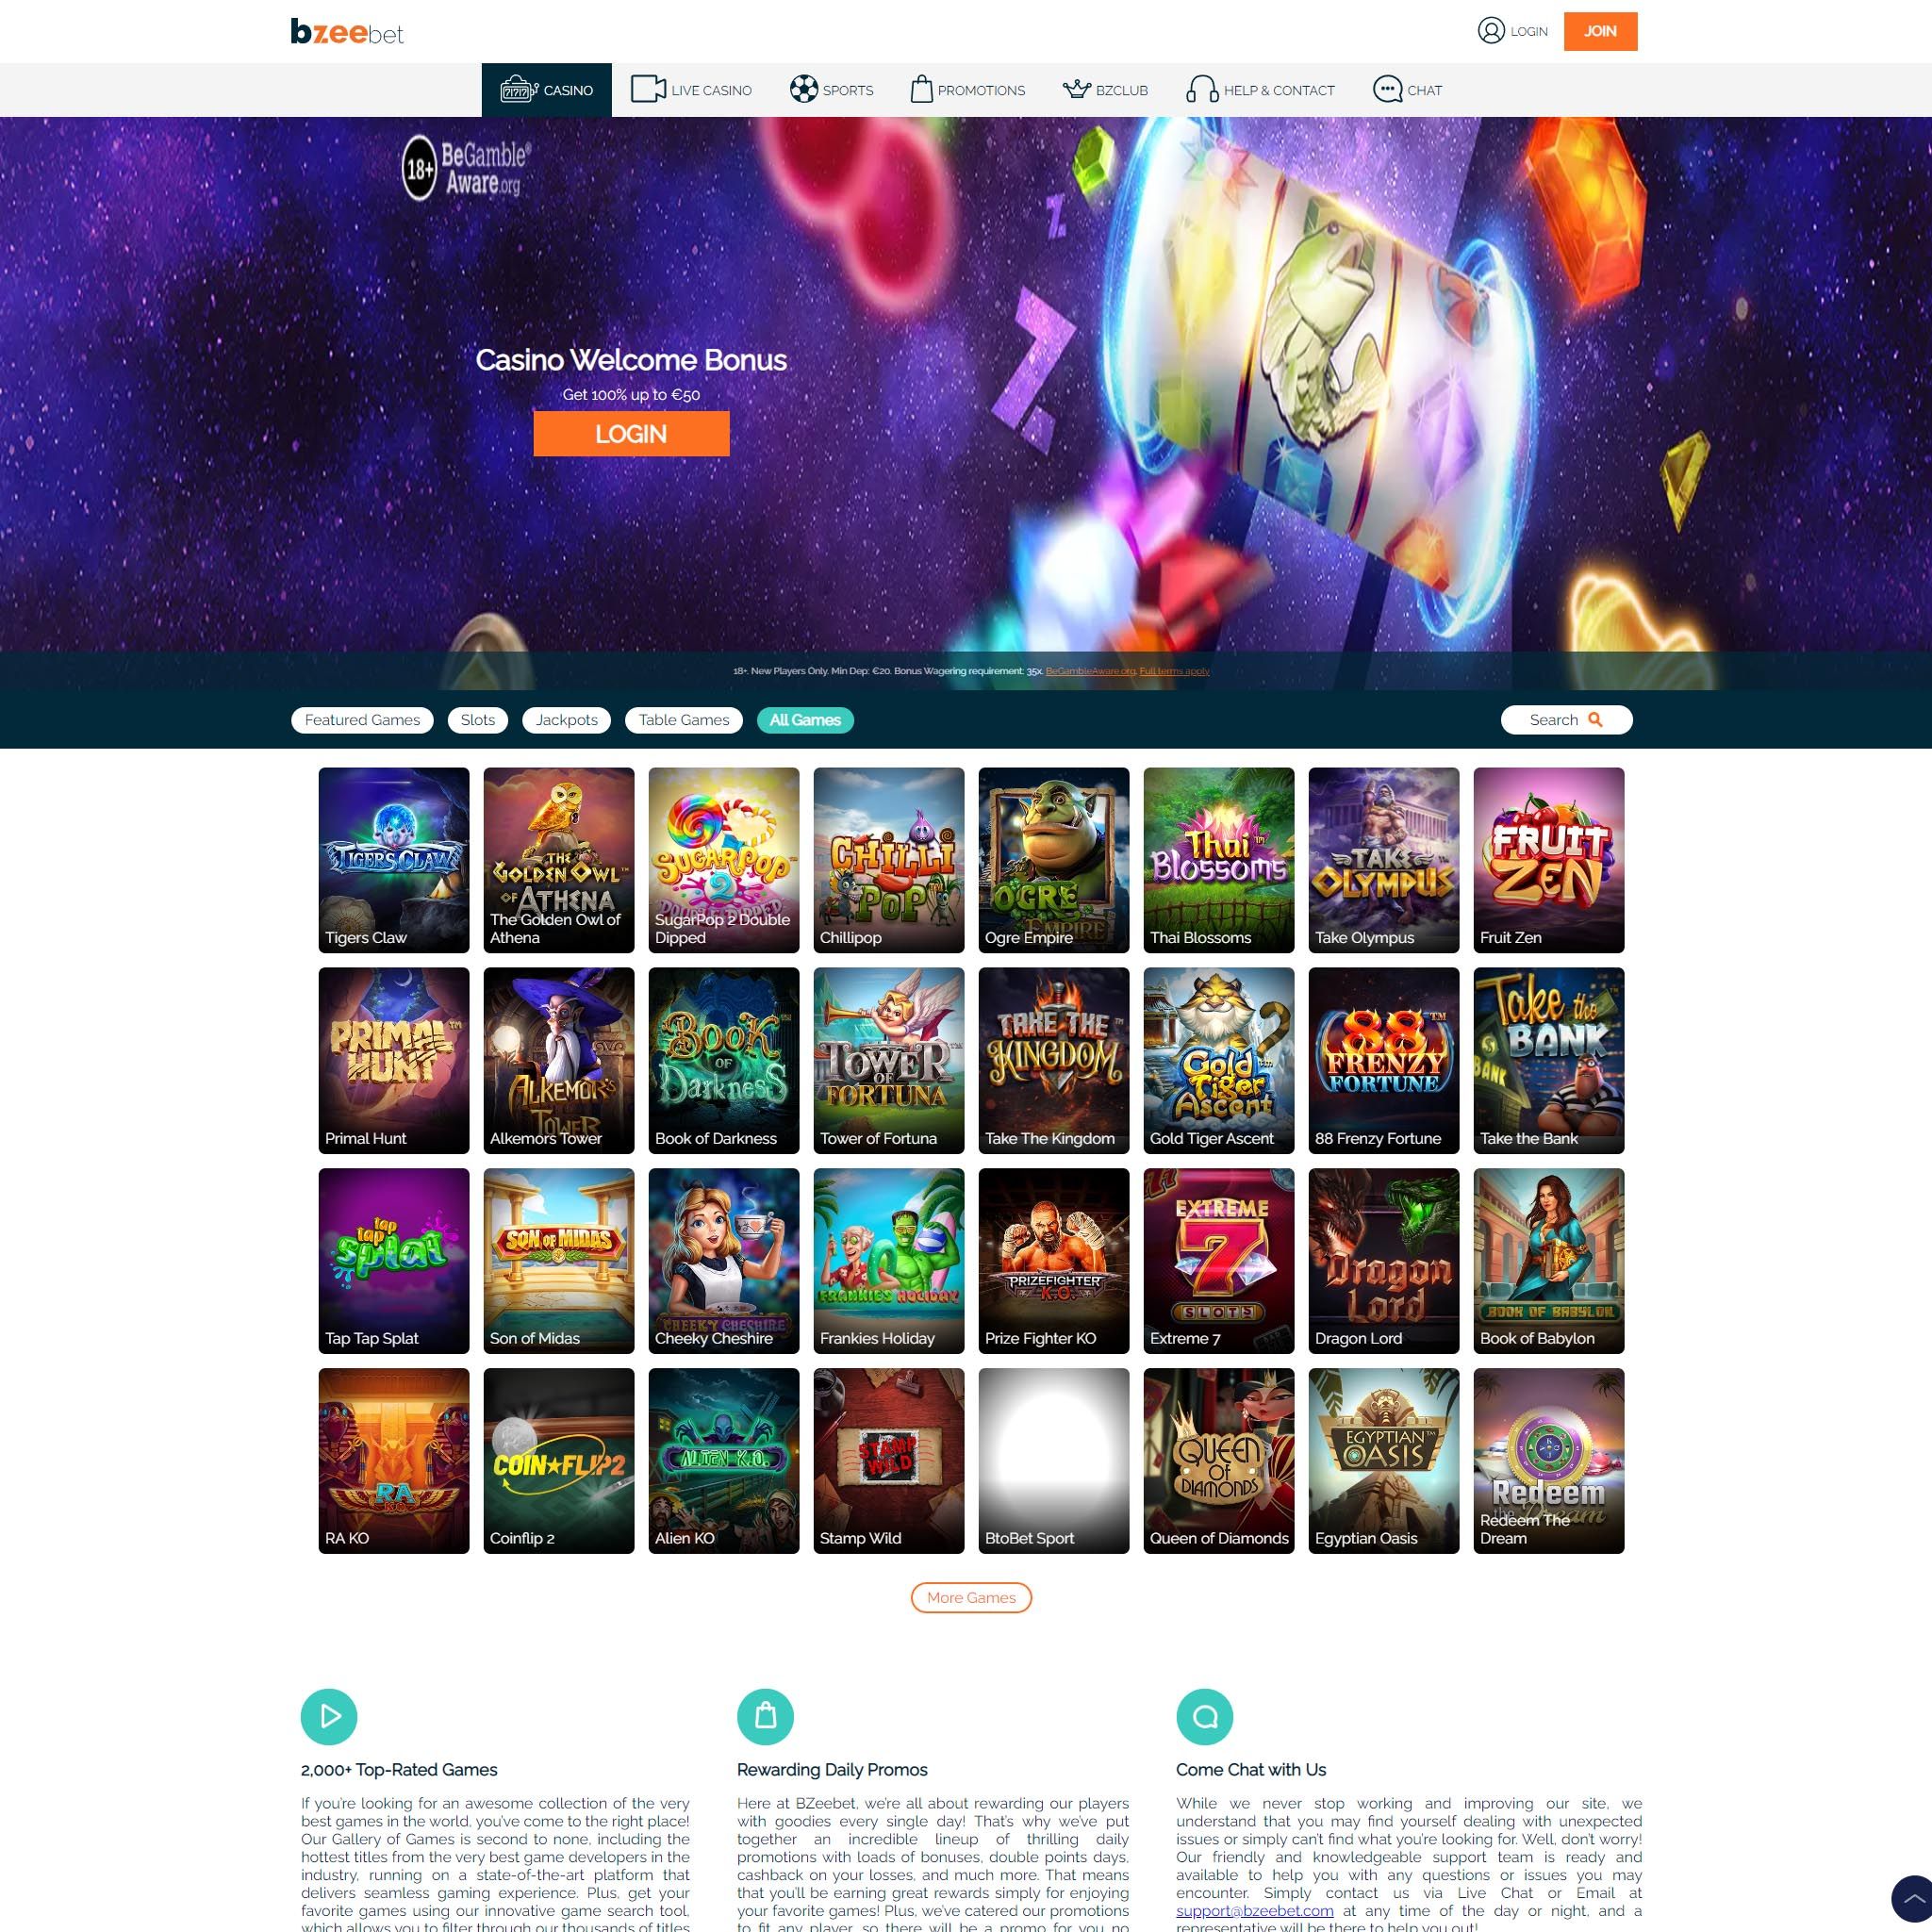 Find Bzeebet game catalog